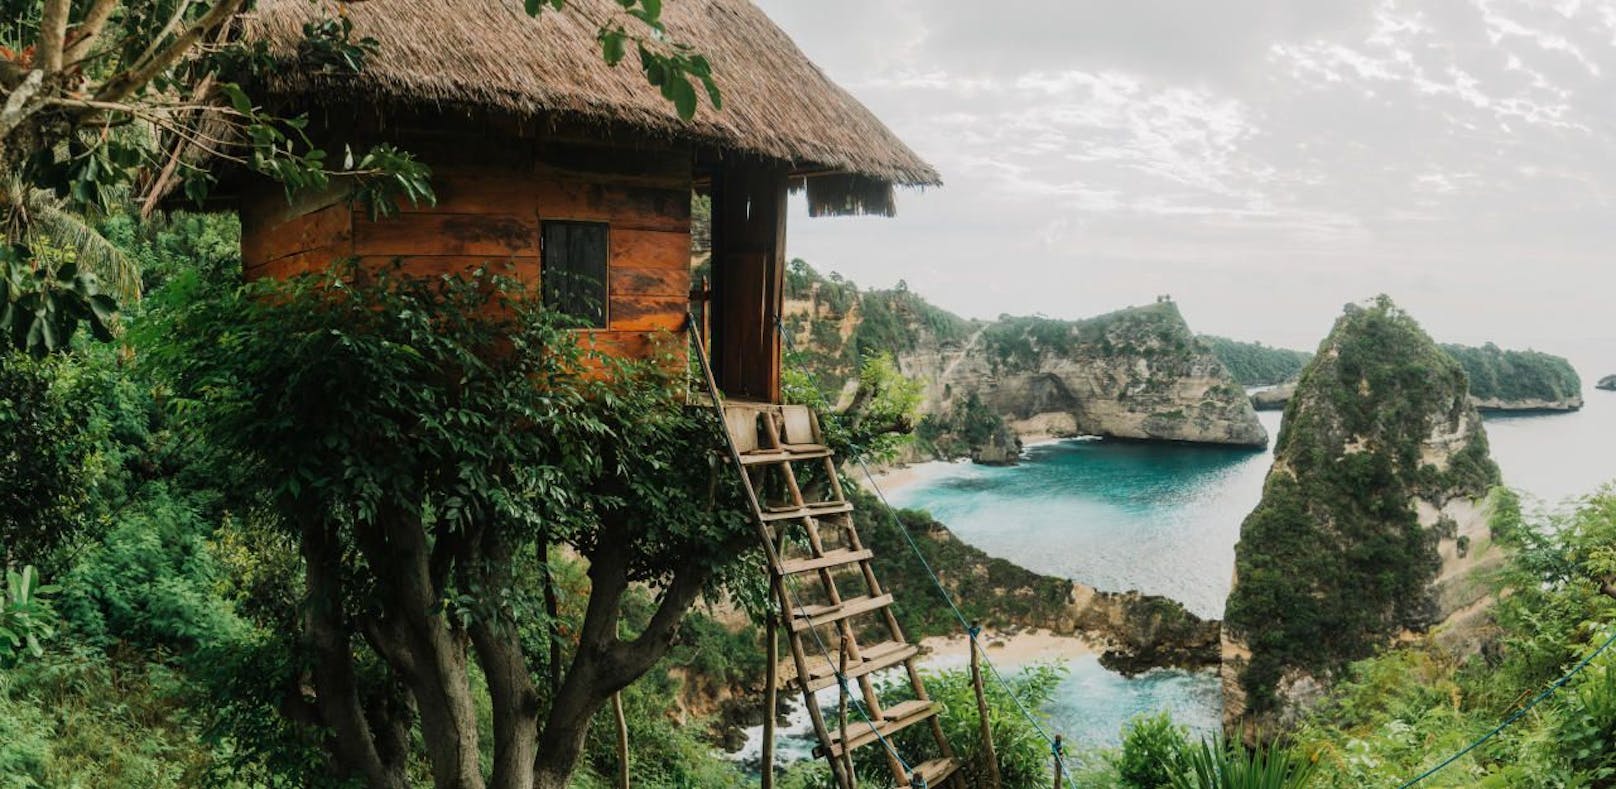 Willkommen im Paradies! Dieses Baumhaus steht in Nusa Penida auf Bali